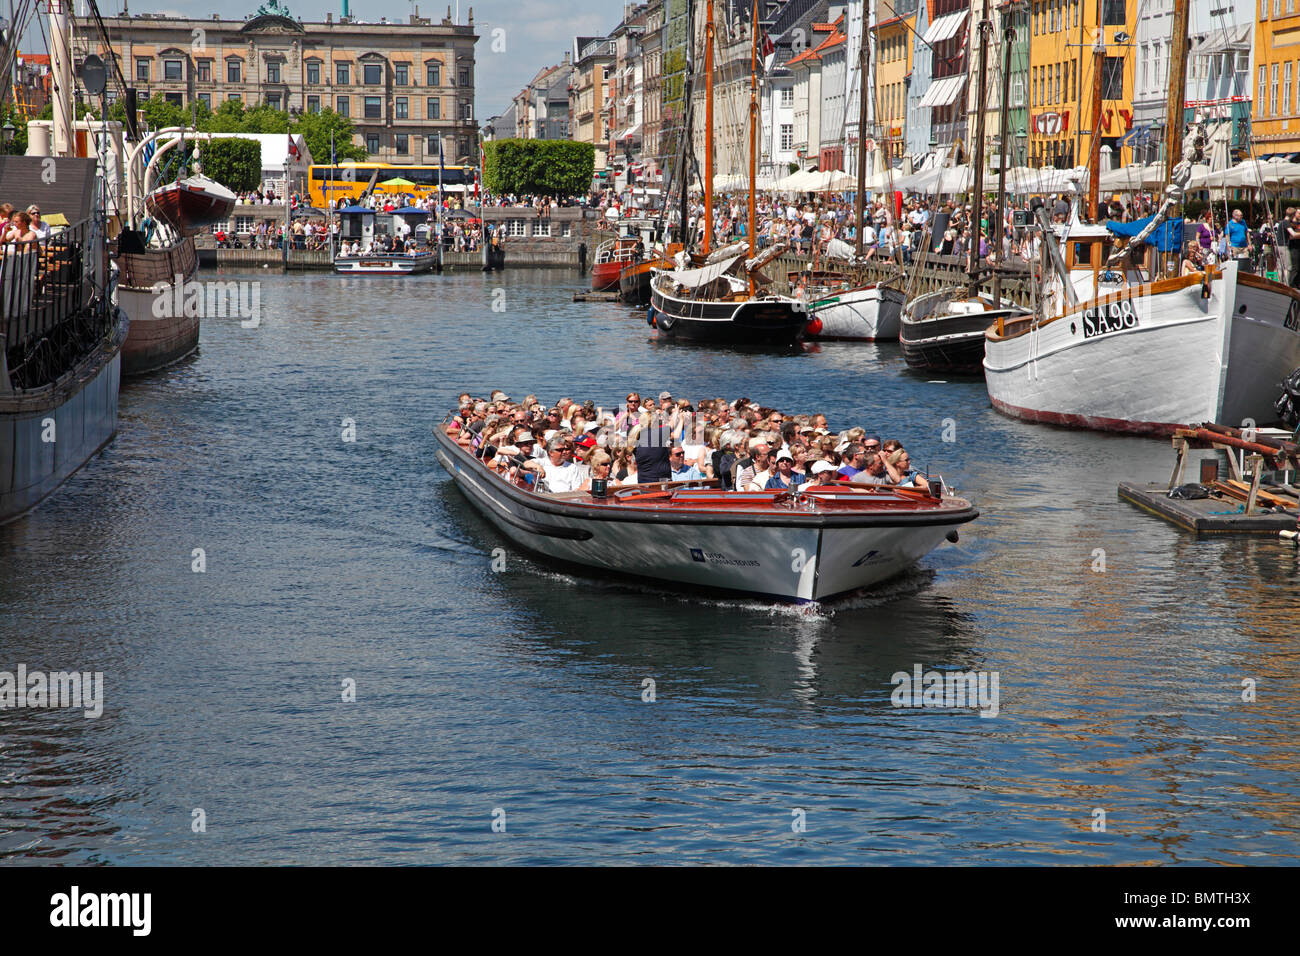 Kanal tour Bootsfahrt voller Sommer Touristen Nyhavn verlassen auf einem Sightseeing Kreuzfahrt in Kopenhagen vorbei an den überfüllten dockside Pflaster Restaurants. Stockfoto